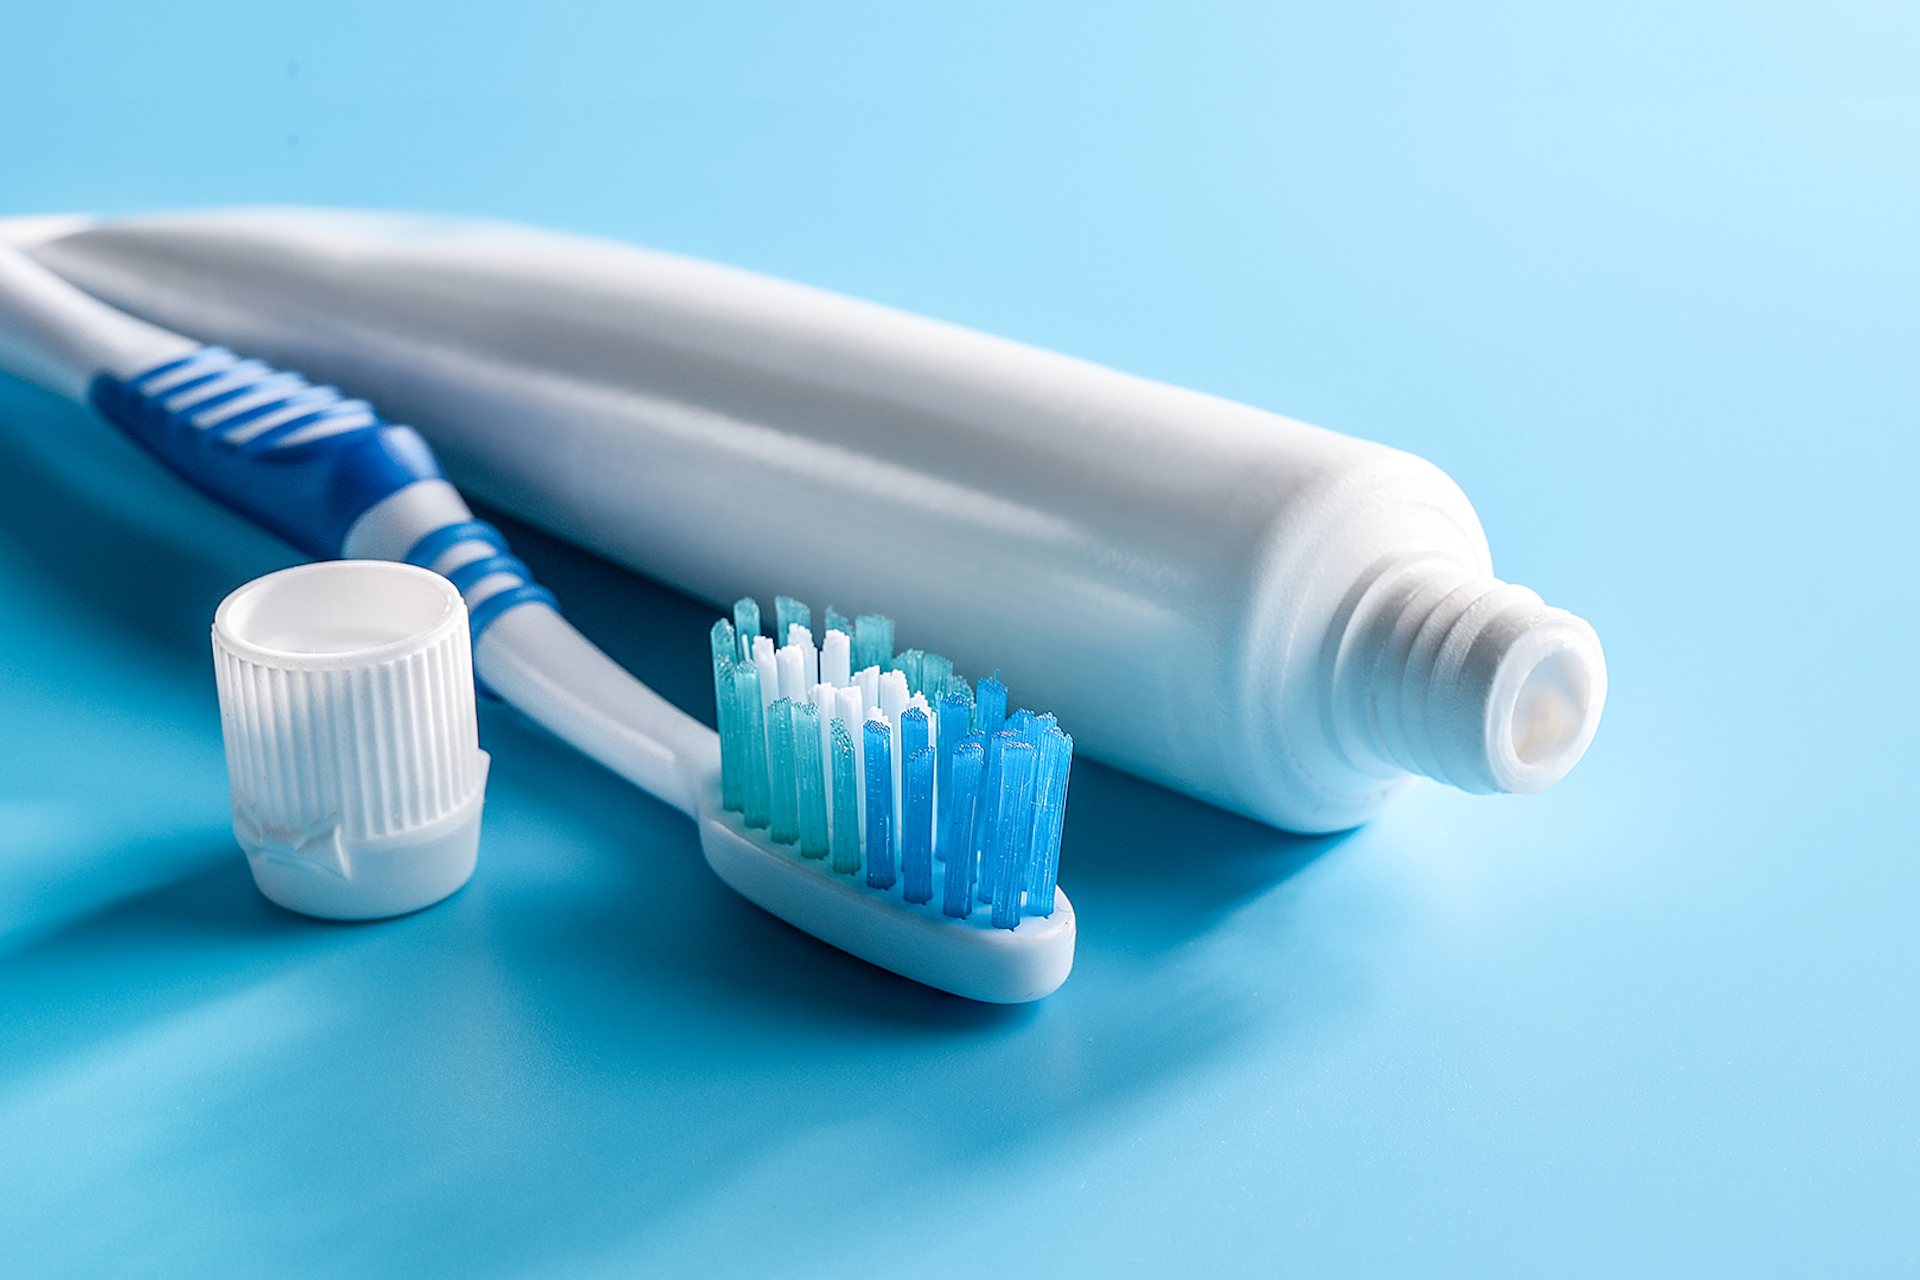 Une image d'une brosse à dent et tube de dentifrice sur une fond bleu